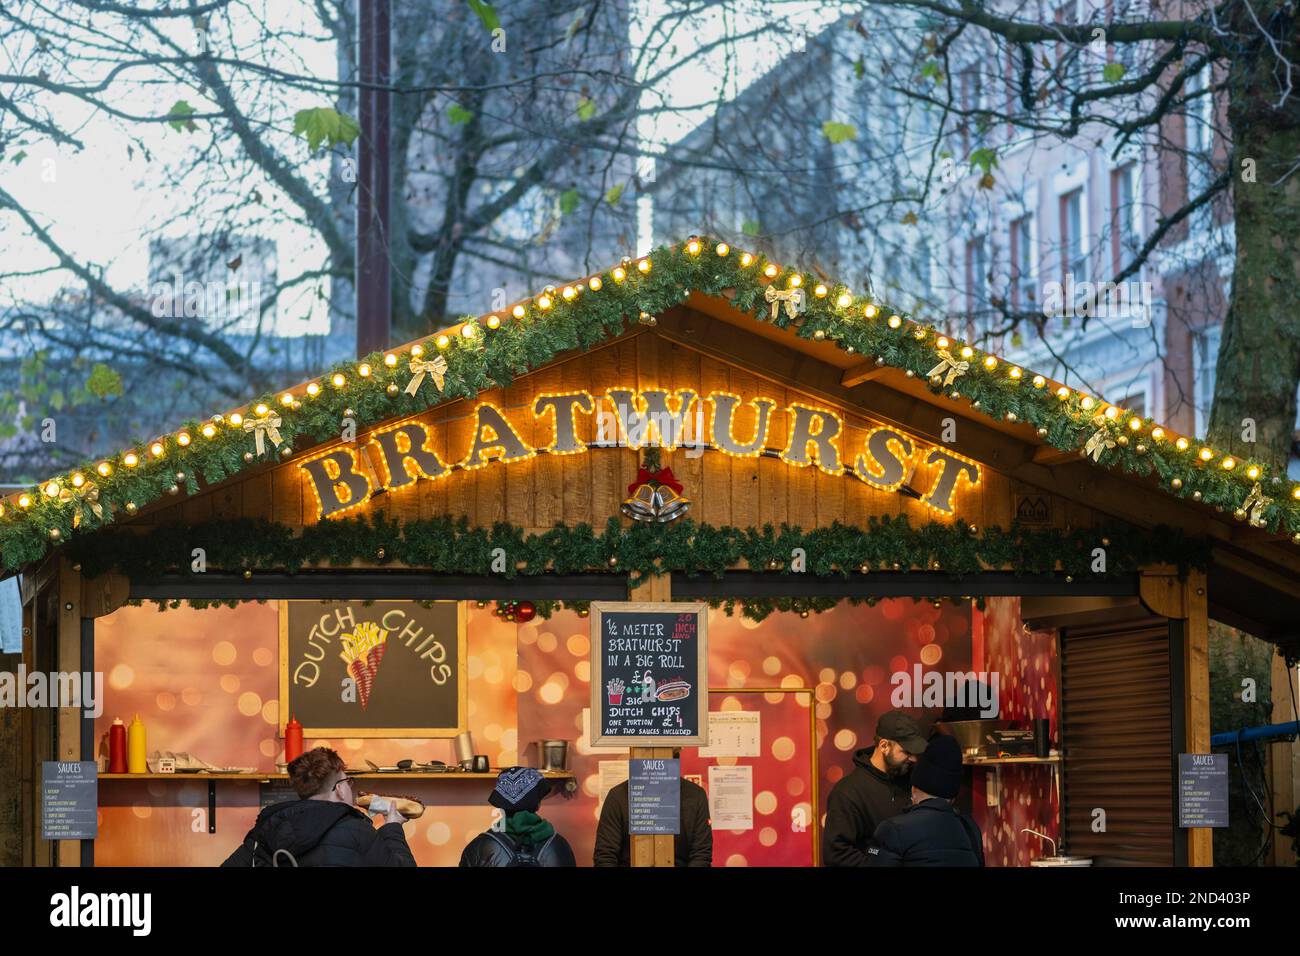 Closeup di segno illuminato di una bancarella di bratwurst in uno chalet in legno di stile alpino presso i mercatini di Natale di Manchester. Manchester. REGNO UNITO Foto Stock